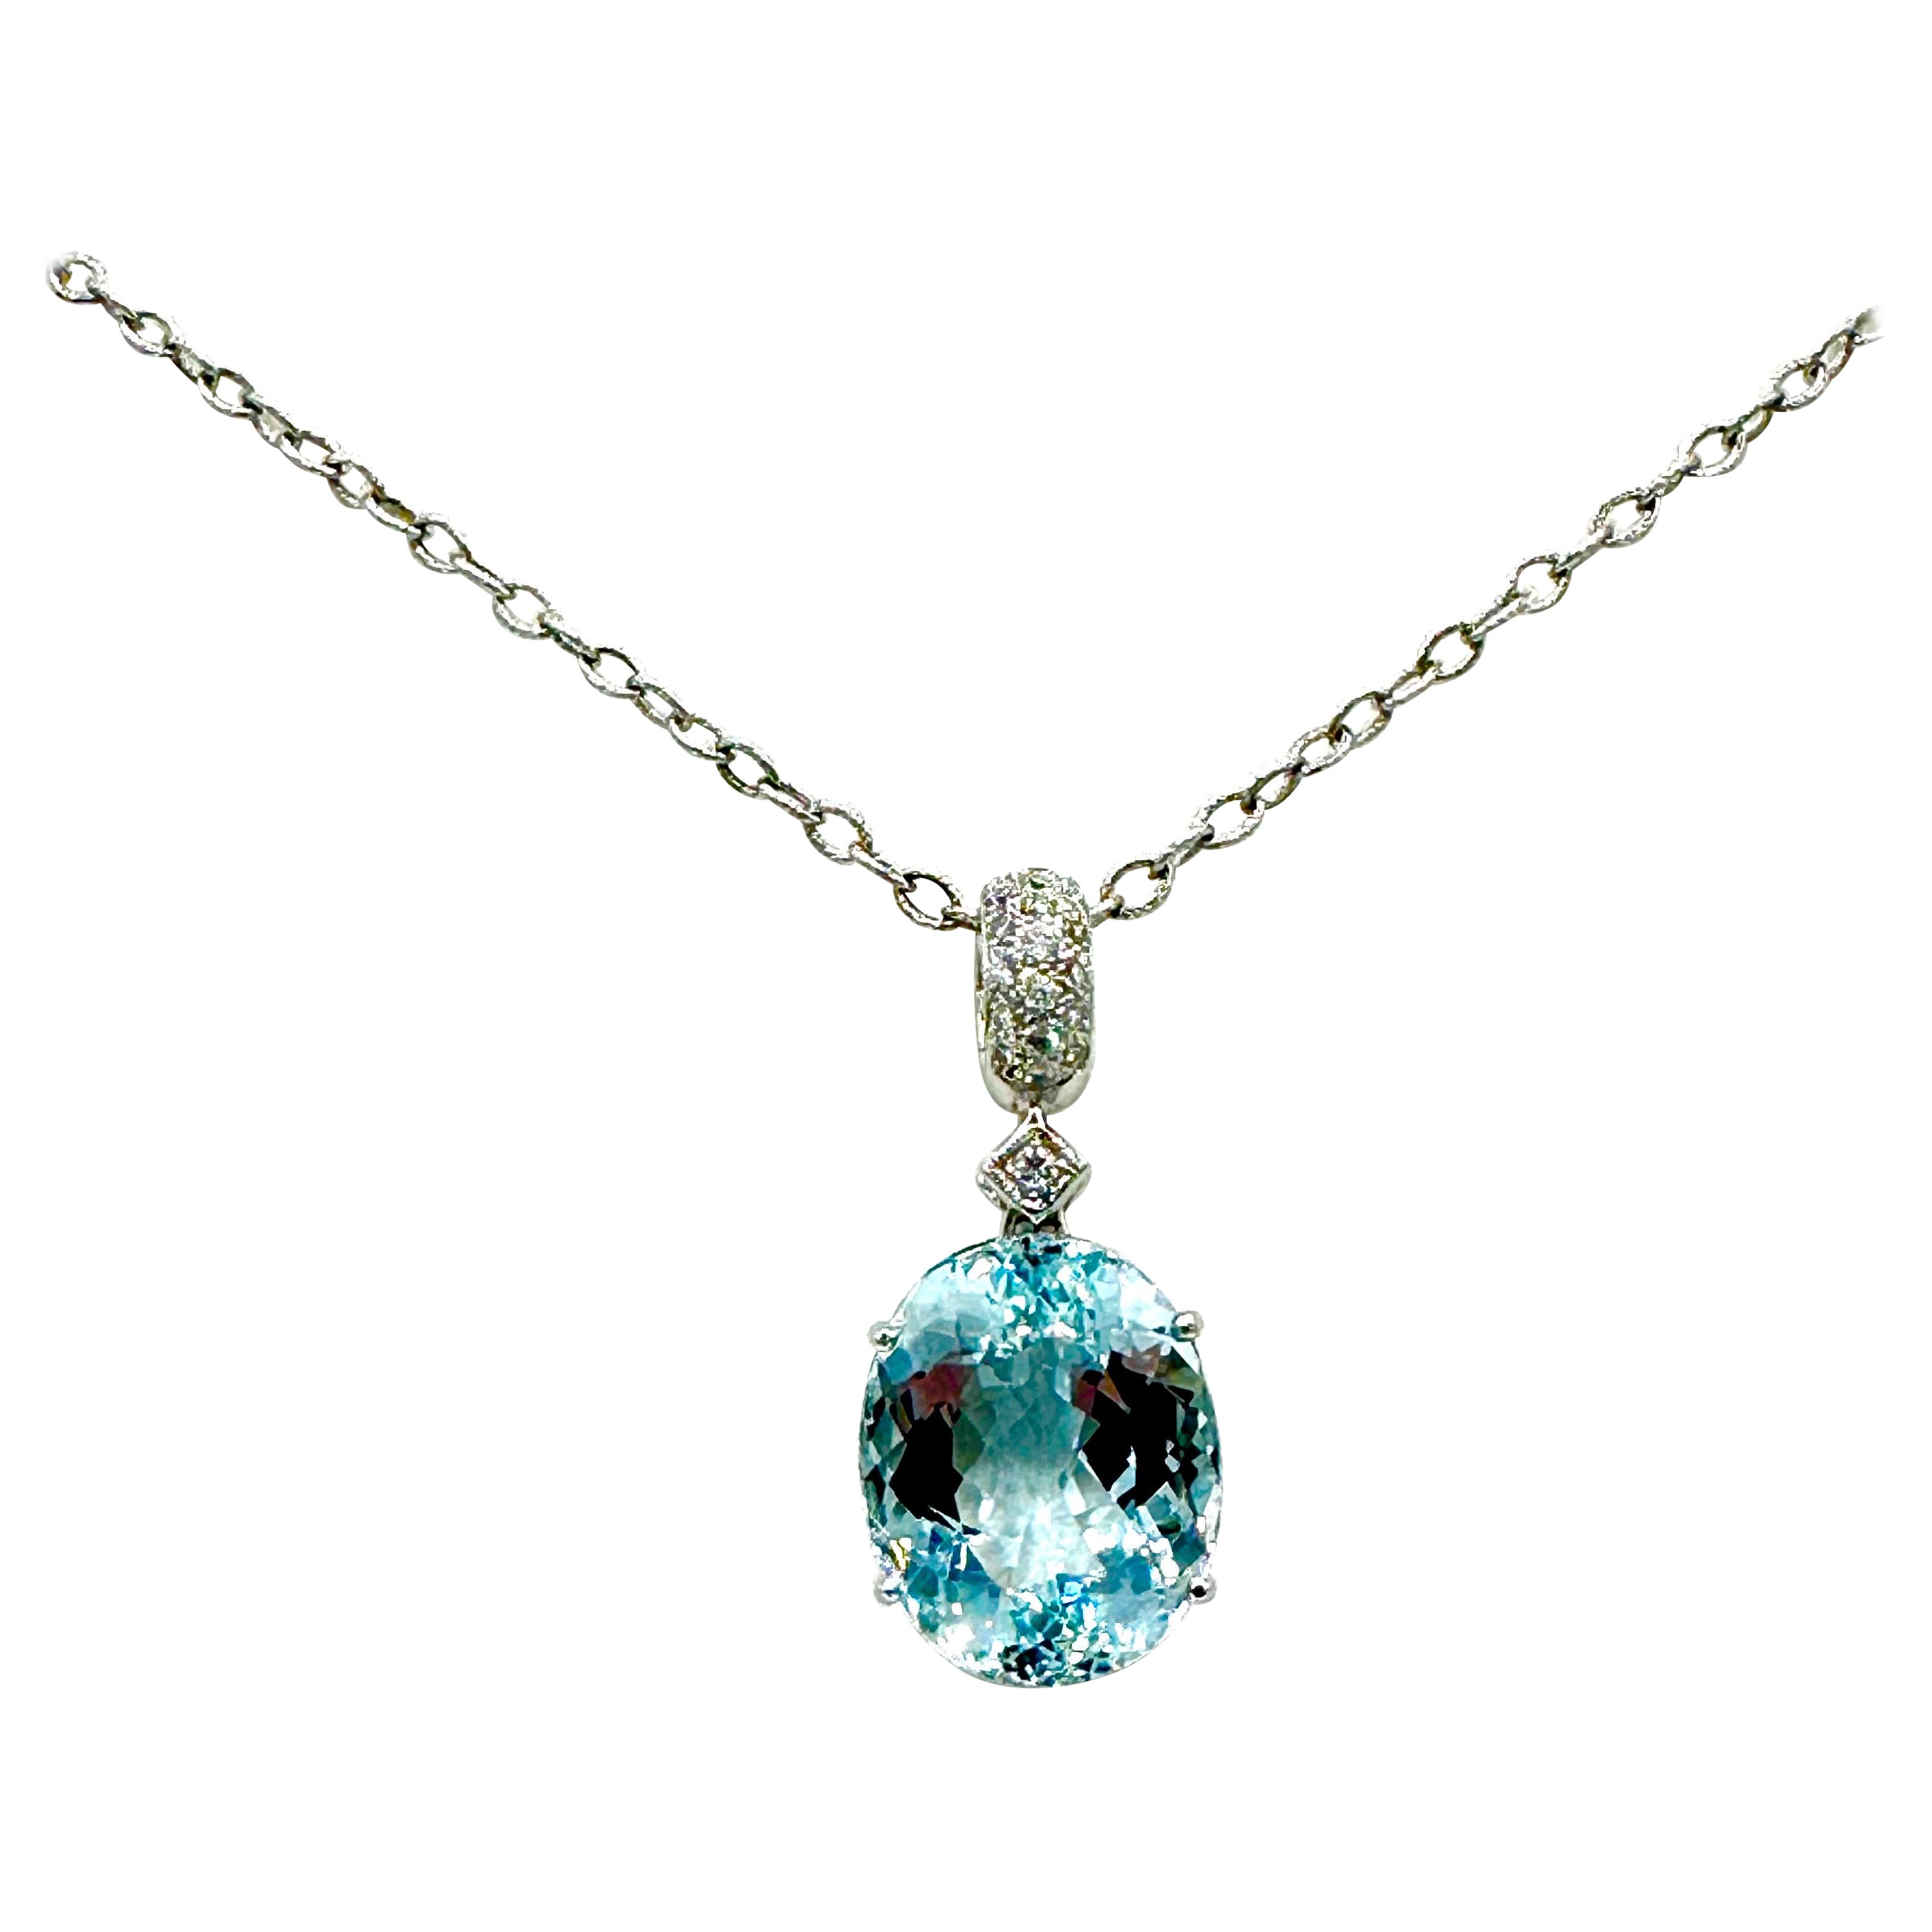 15.08 Carat Oval Aquamarine and Round Brilliant Diamond Pendant Necklace